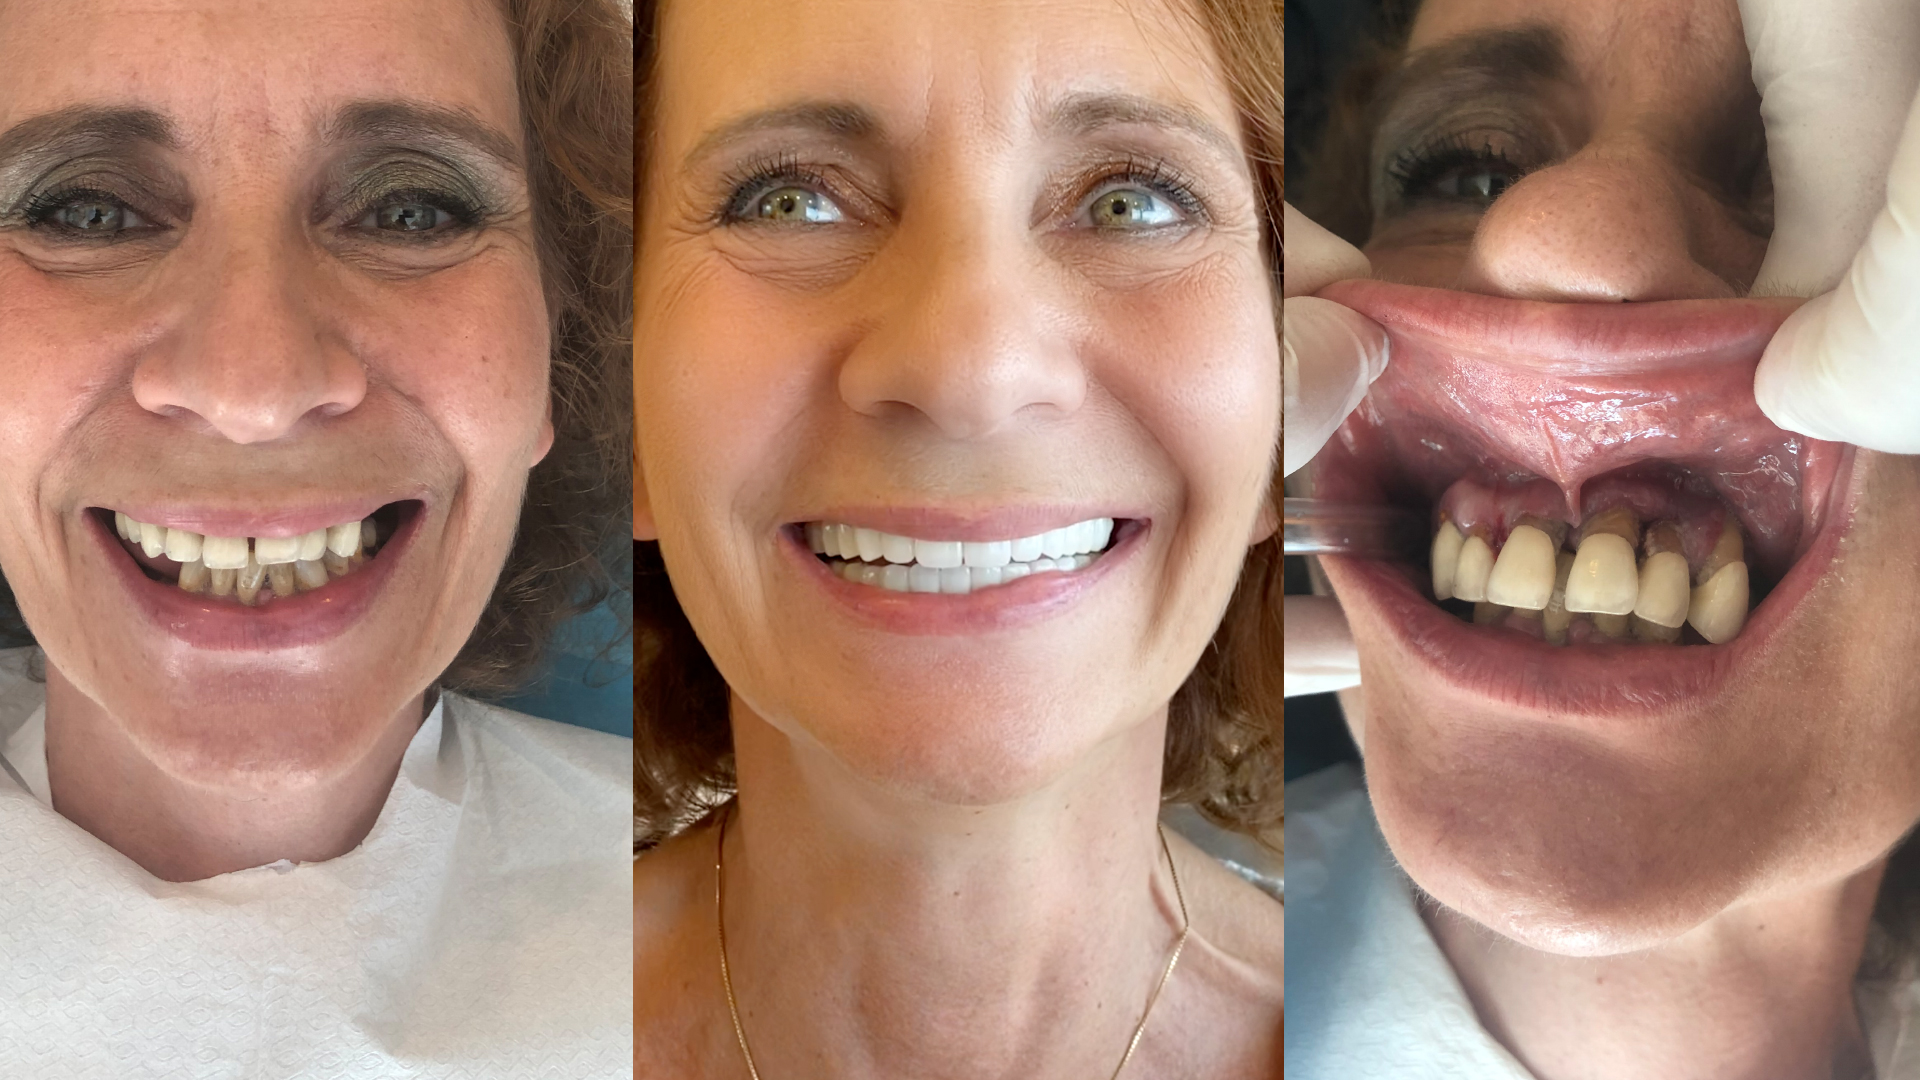 Dental implant with dental bone graft and veneers in Turkey